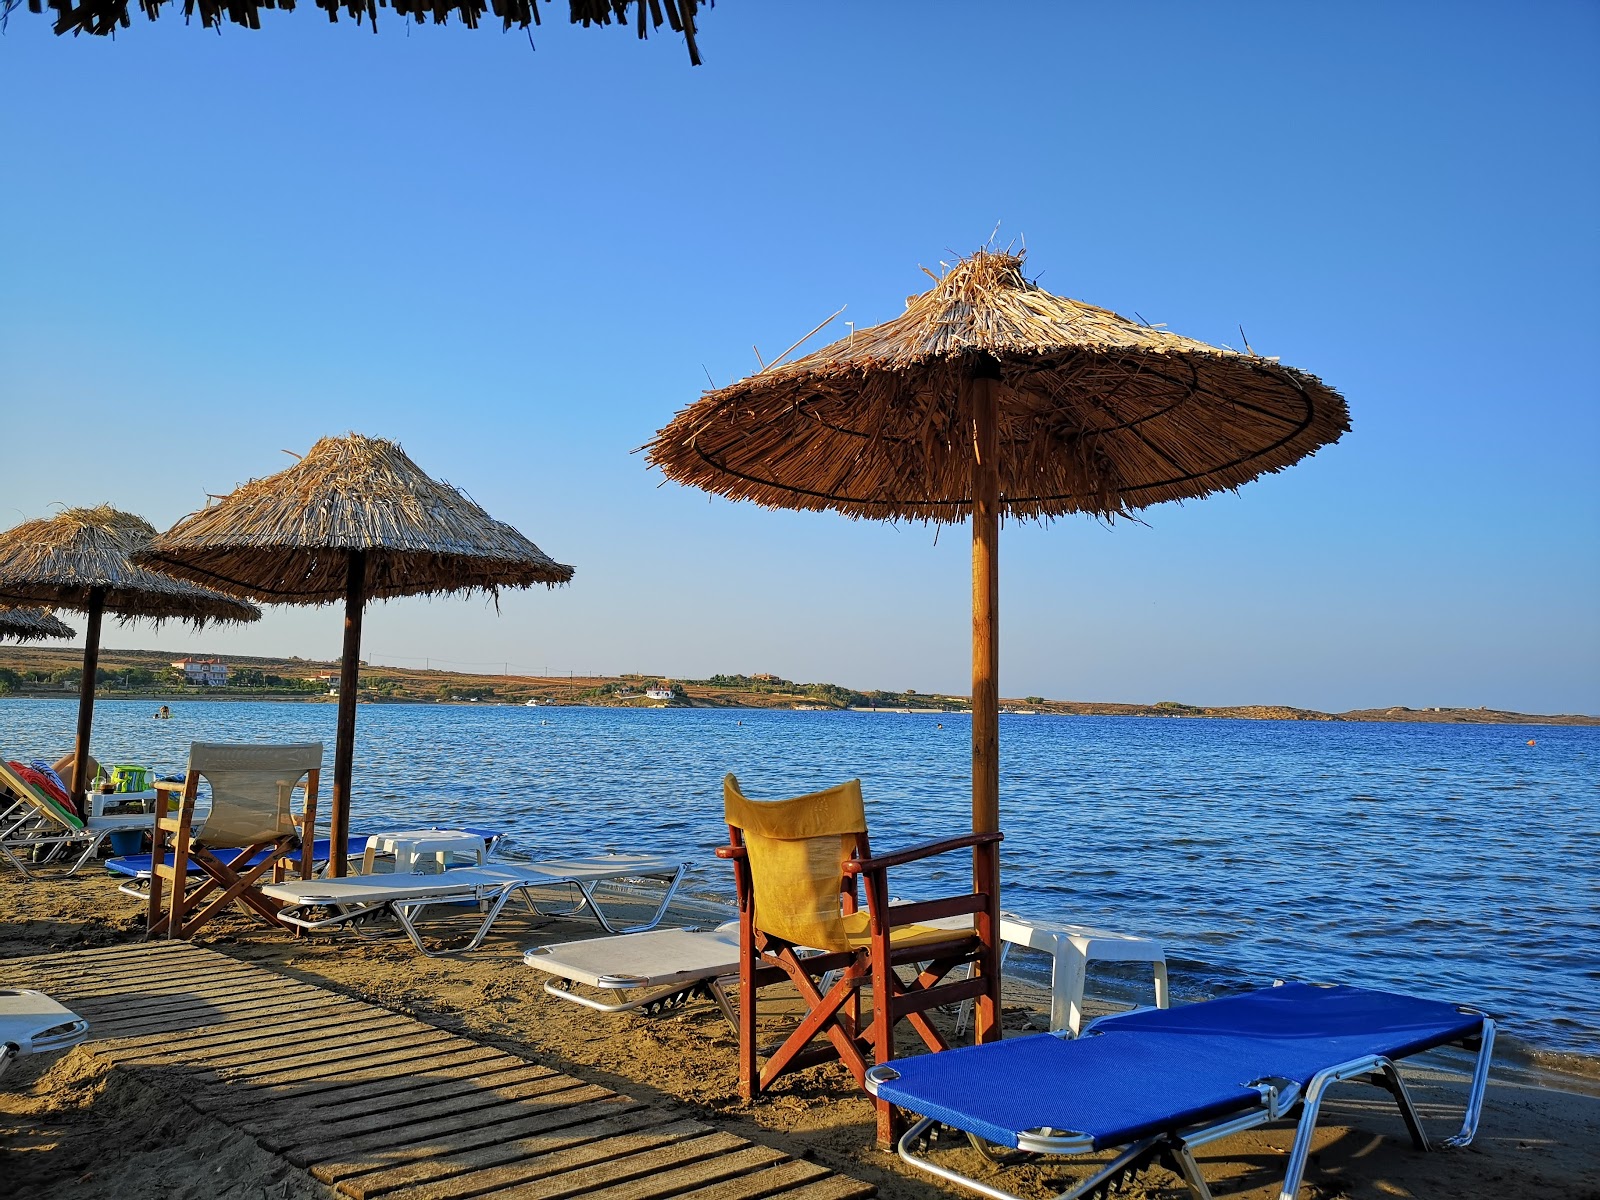 Photo de Kotsinas beach - endroit populaire parmi les connaisseurs de la détente